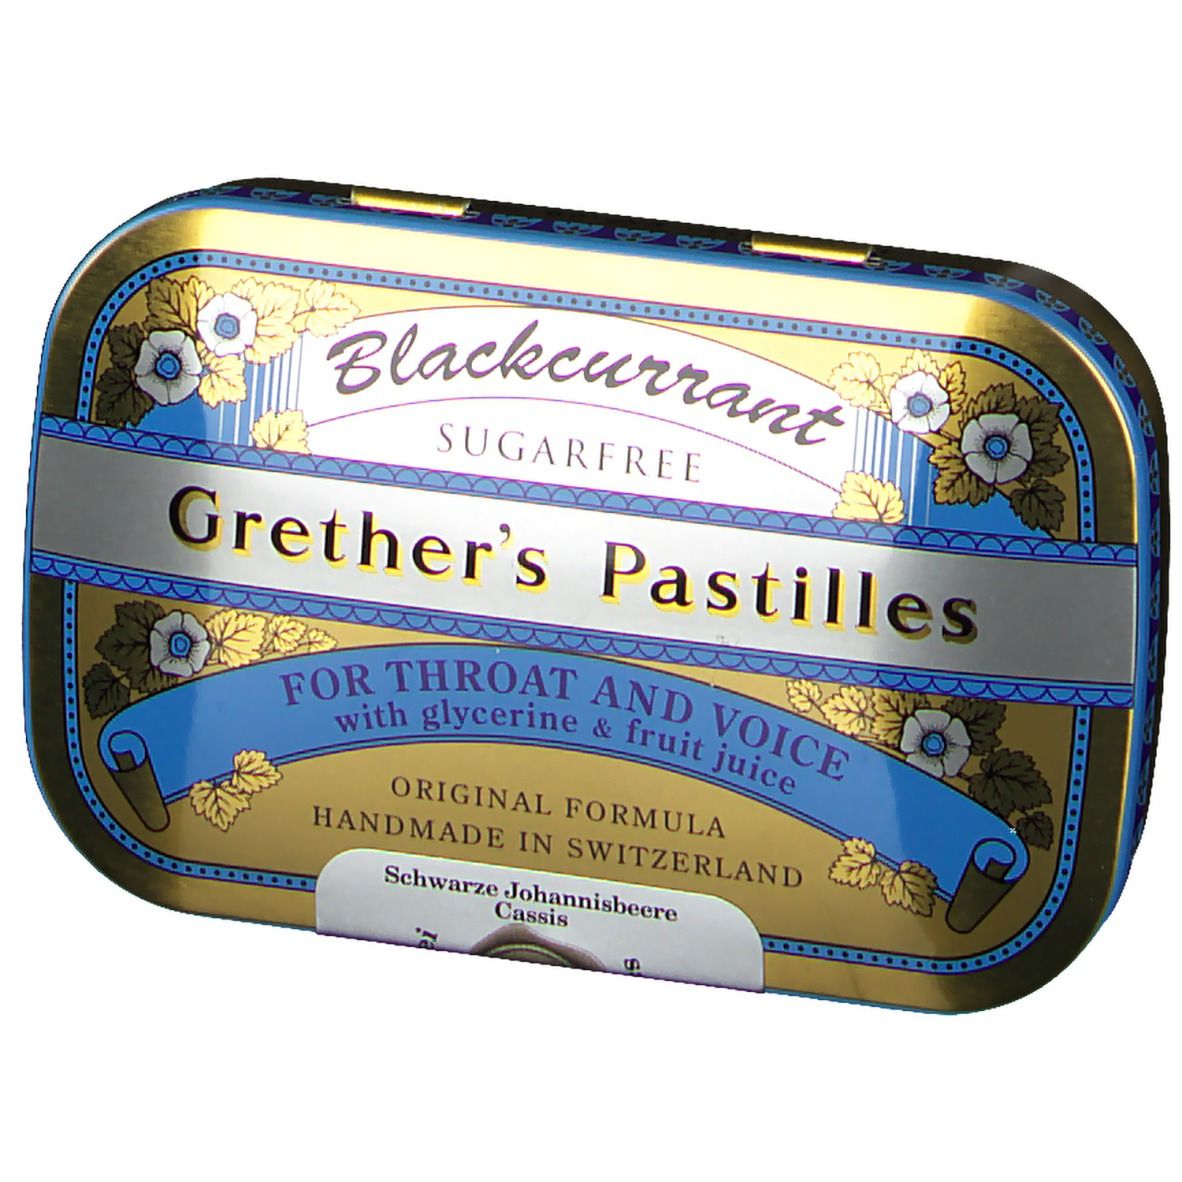 Grethers Blackcurrant Silber zuckerfreie Pastillen